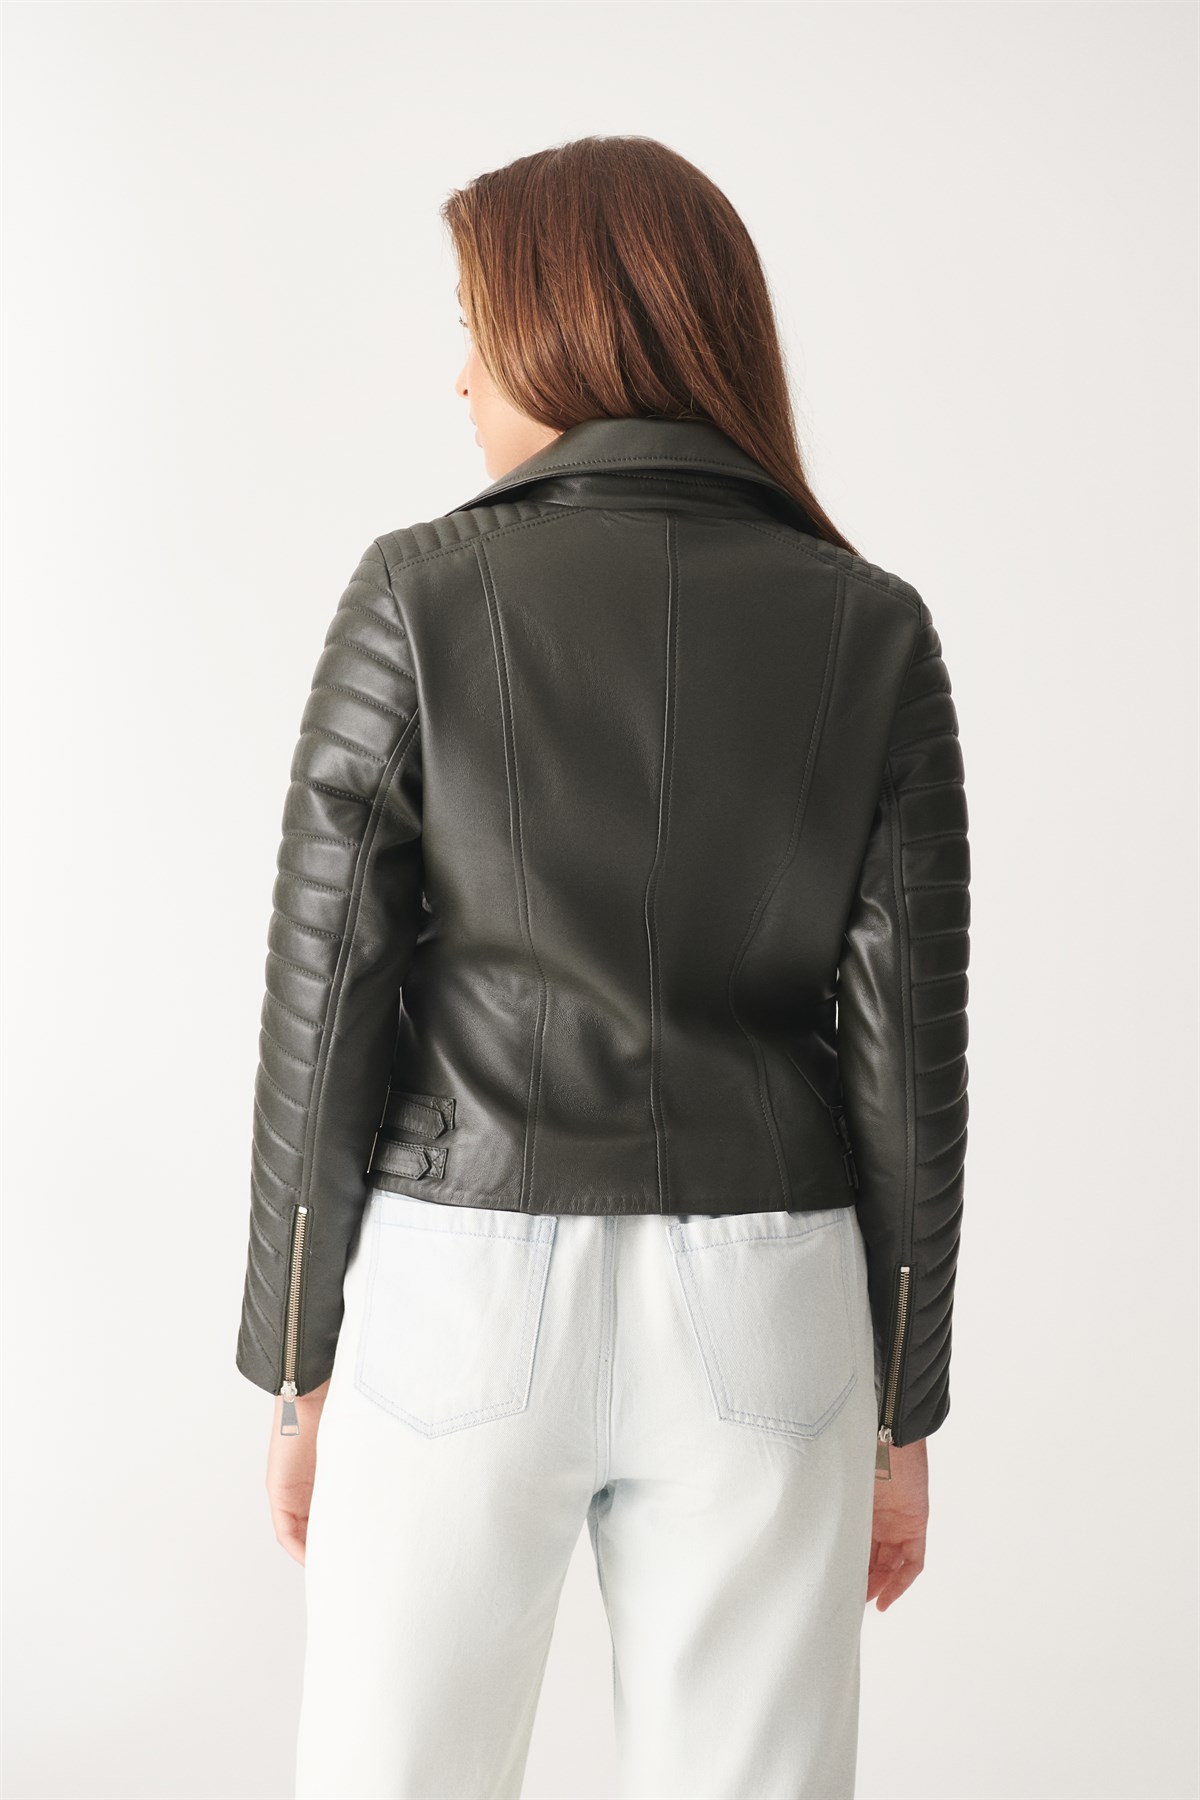 EVA Green Leather Jacket | Women's Leather Jacket Models